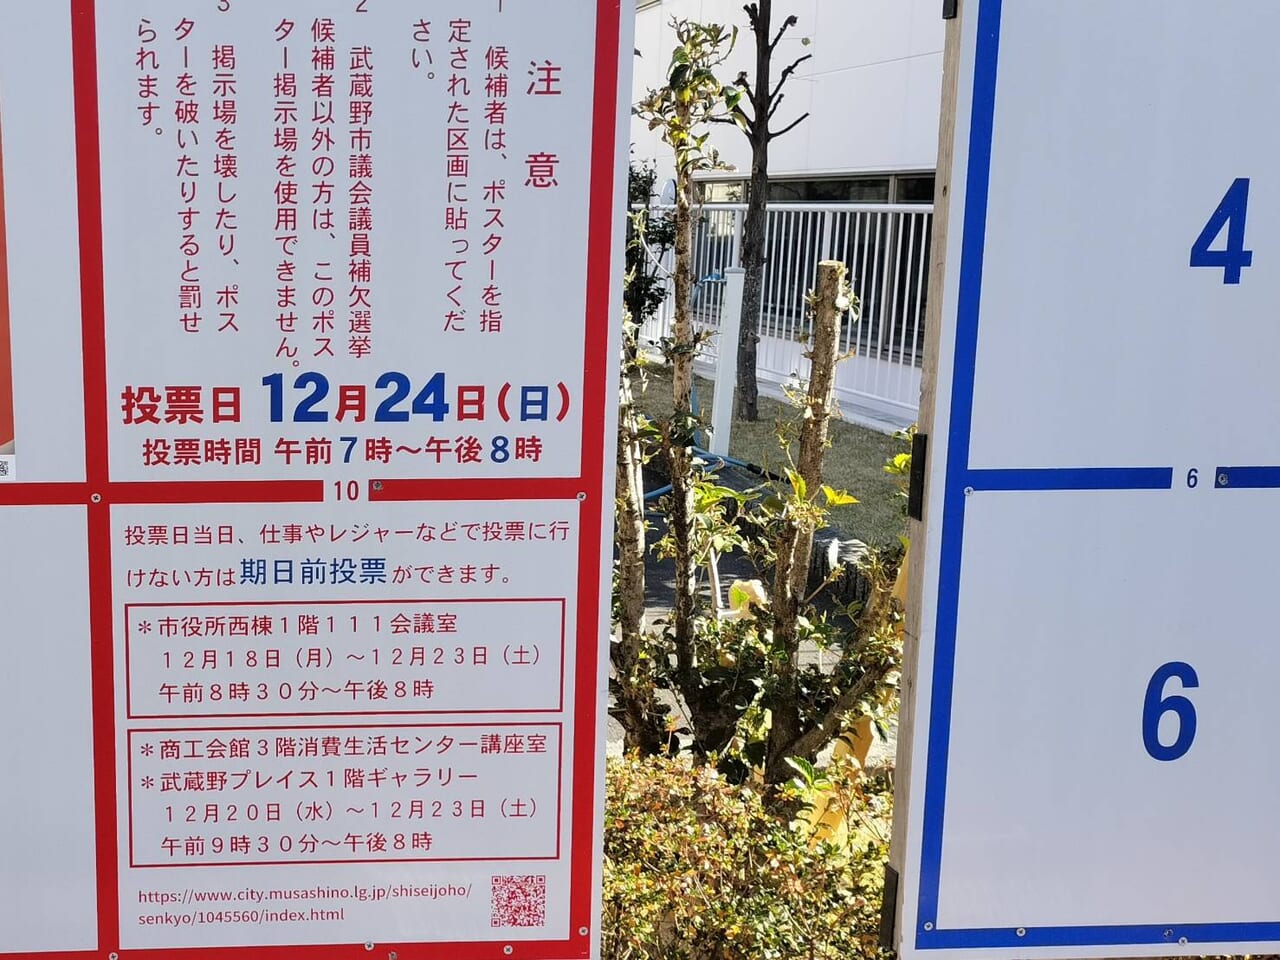 武蔵野市議補選も行われています